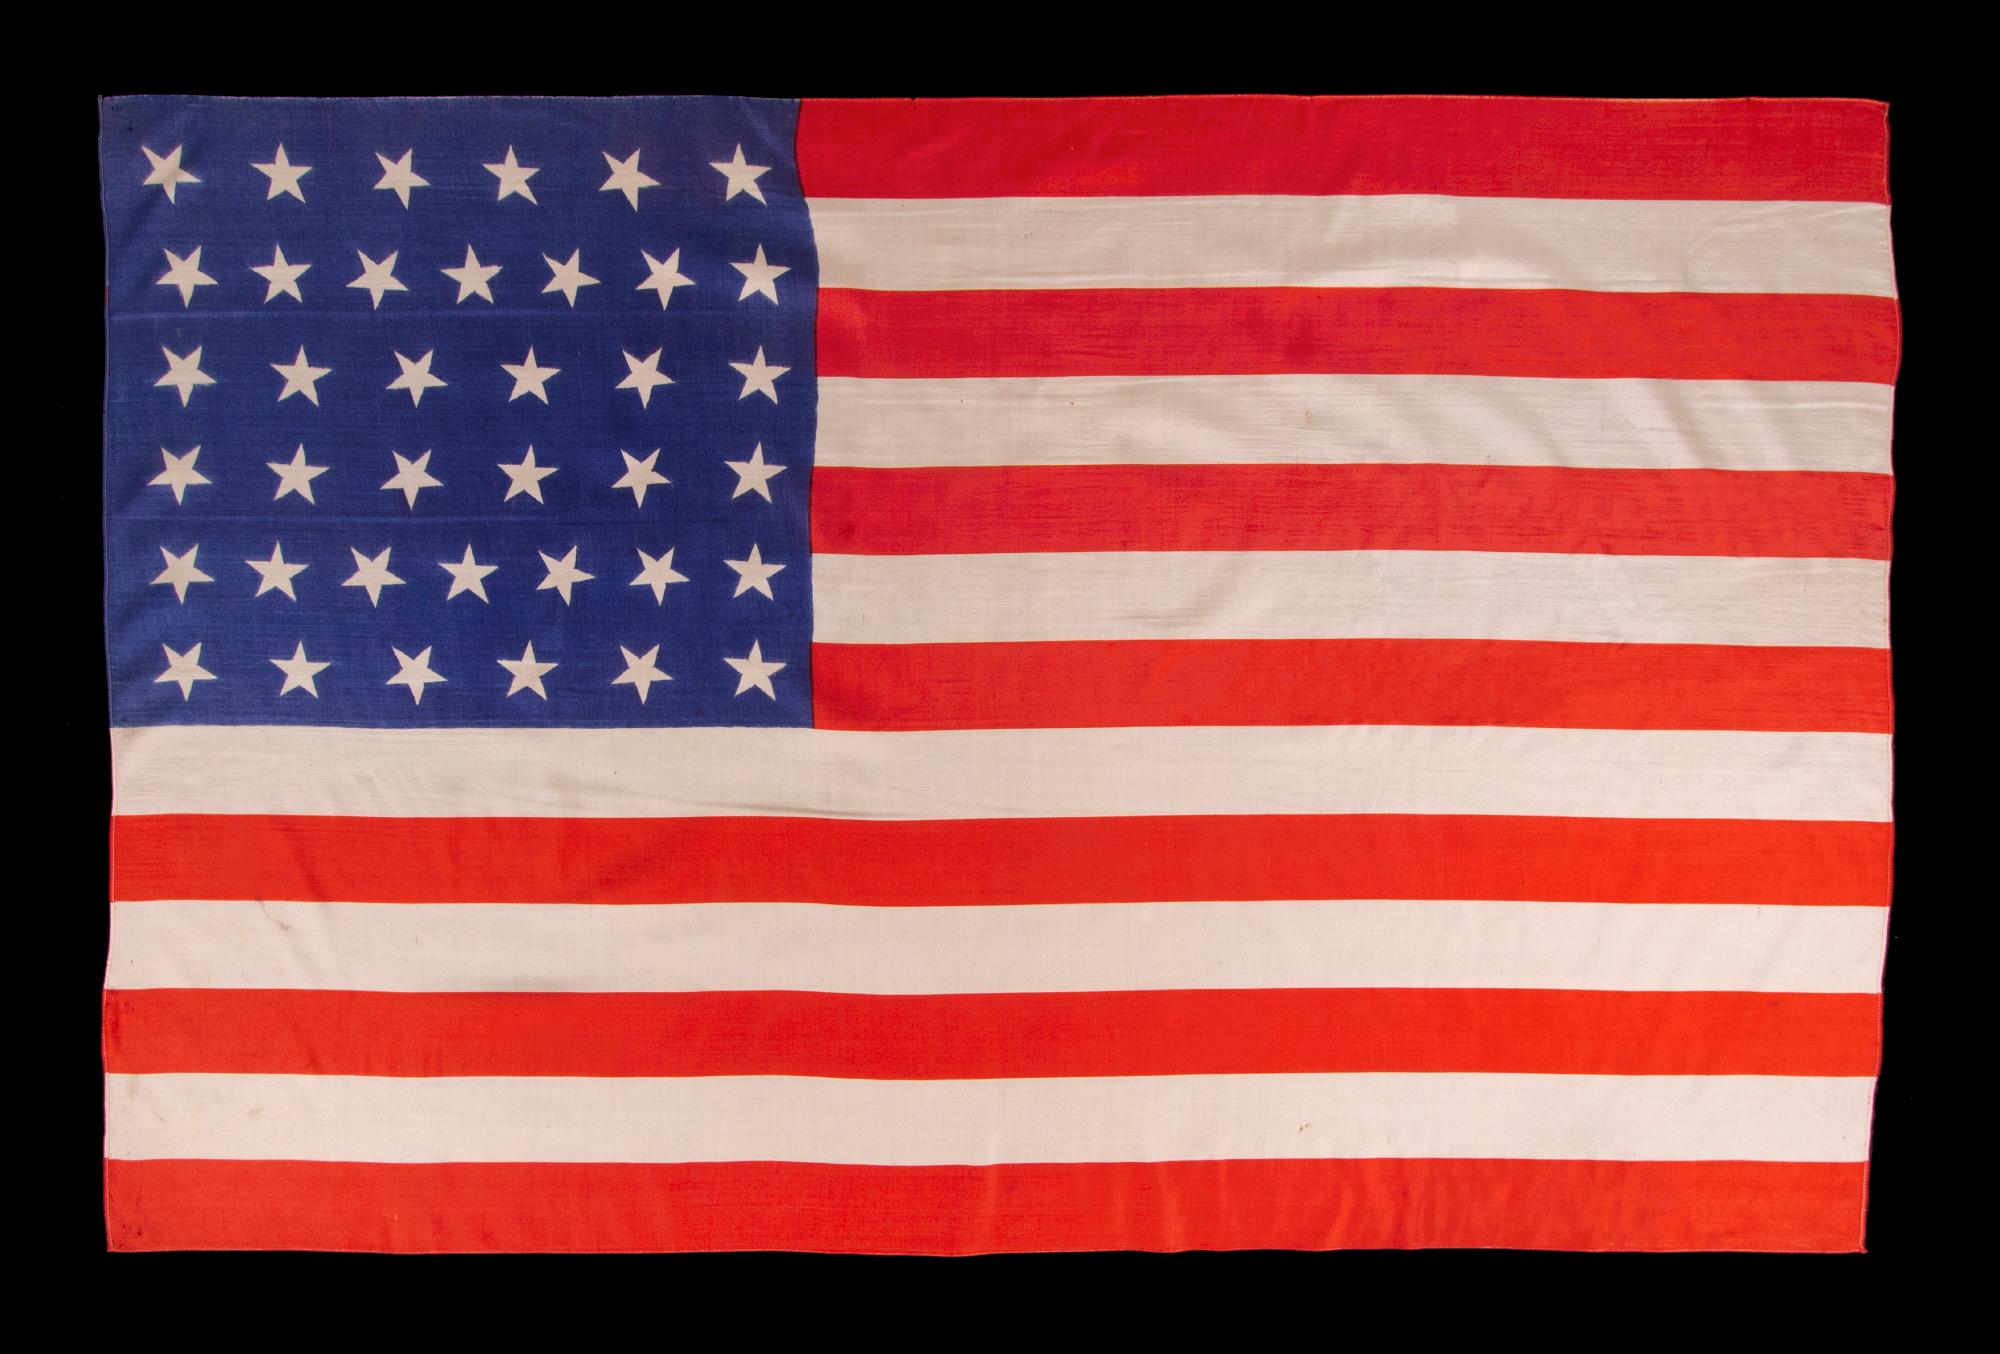 38 Sterne, antike amerikanische Paradeflagge mit verstreuten Sternen, aus Seide, mit großzügigem Maßstab und lebhaften Farben, Colorado Statehood, 1876-1889

nationale amerikanische Paradeflagge mit 38 Sternen, gedruckt auf Seide. Die Sterne sind